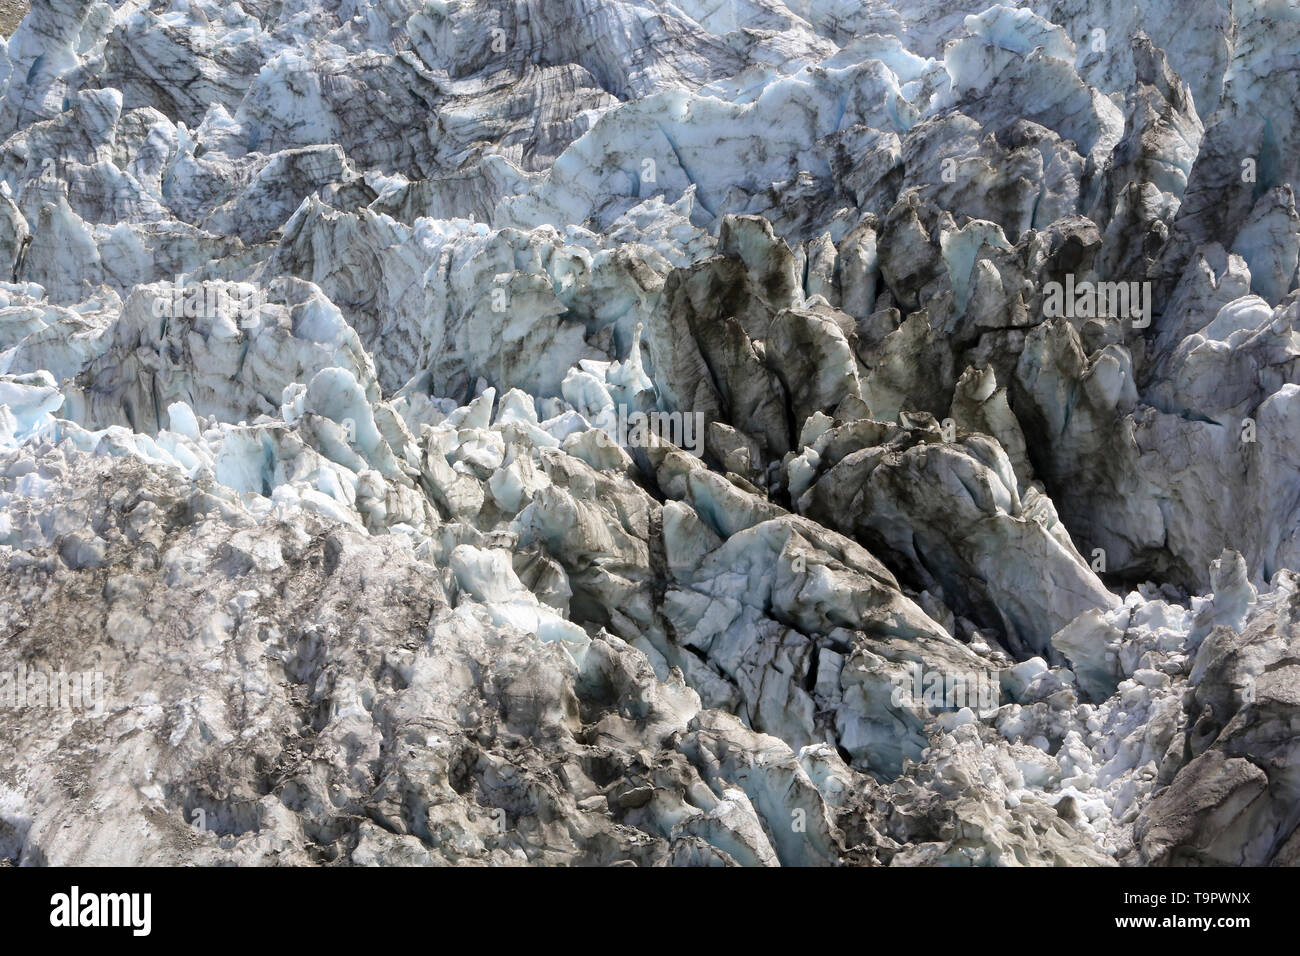 Glacier d'Argentière. Argentière. Chamonix Mont-Blanc. Haute-Savoie. France. Stock Photo